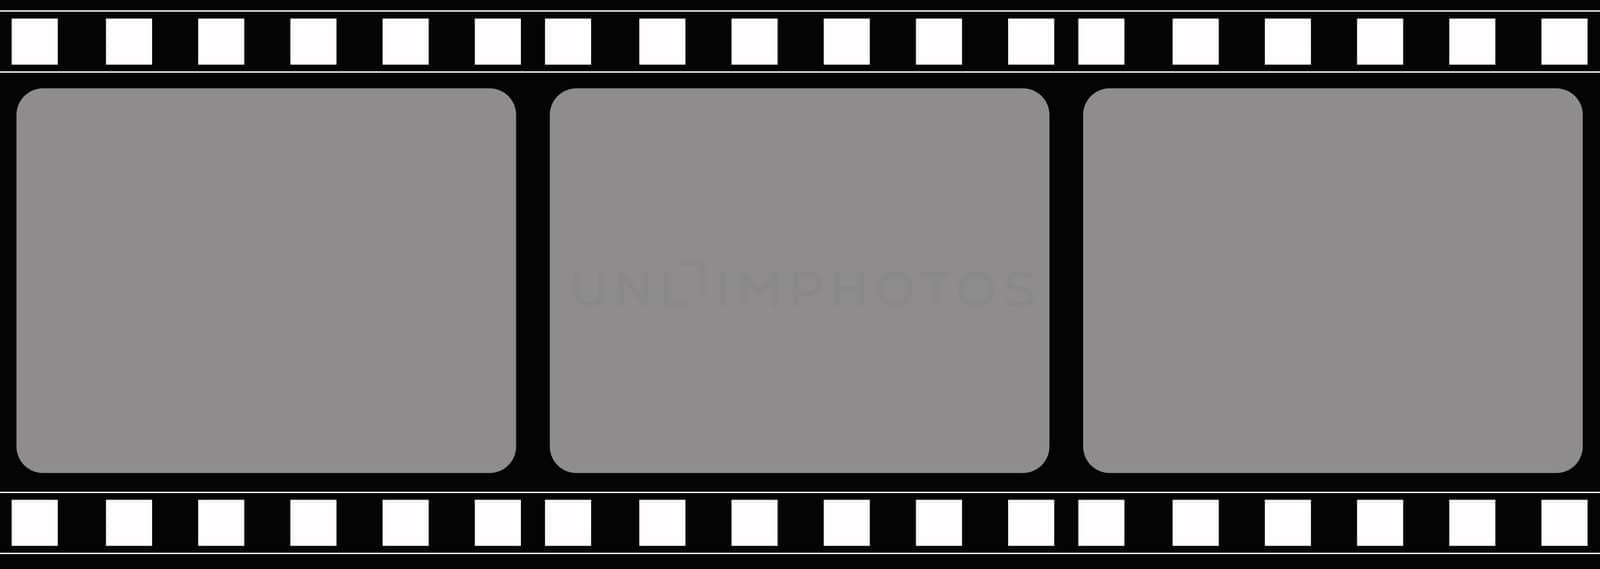 Computer designed film frame background